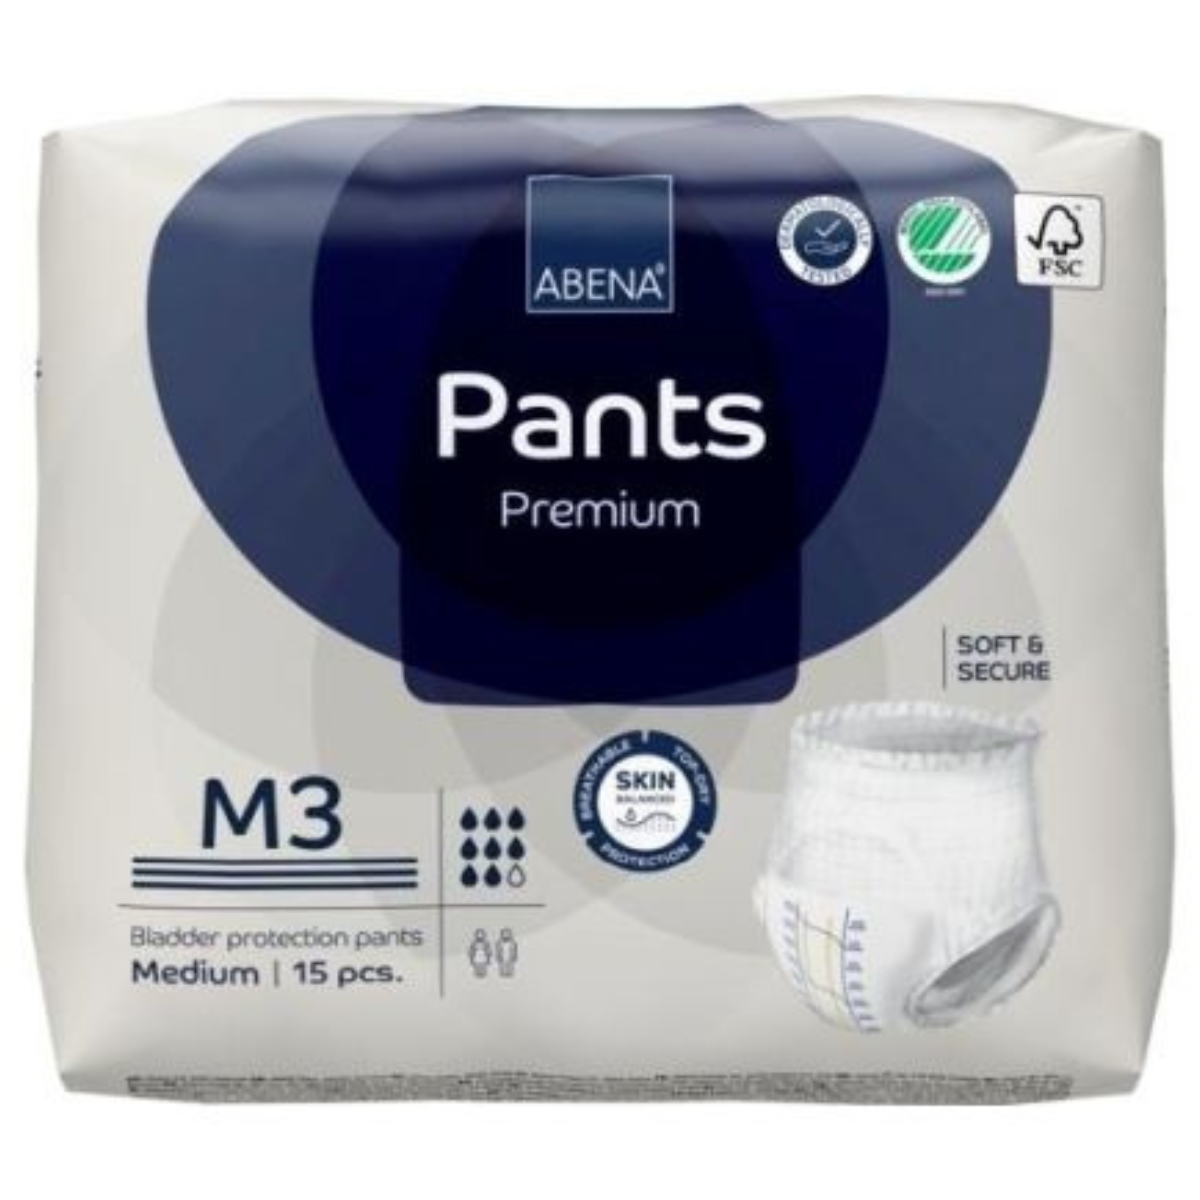 Abena Pants M3 Premium 2400 ml medium unisex pull-ups